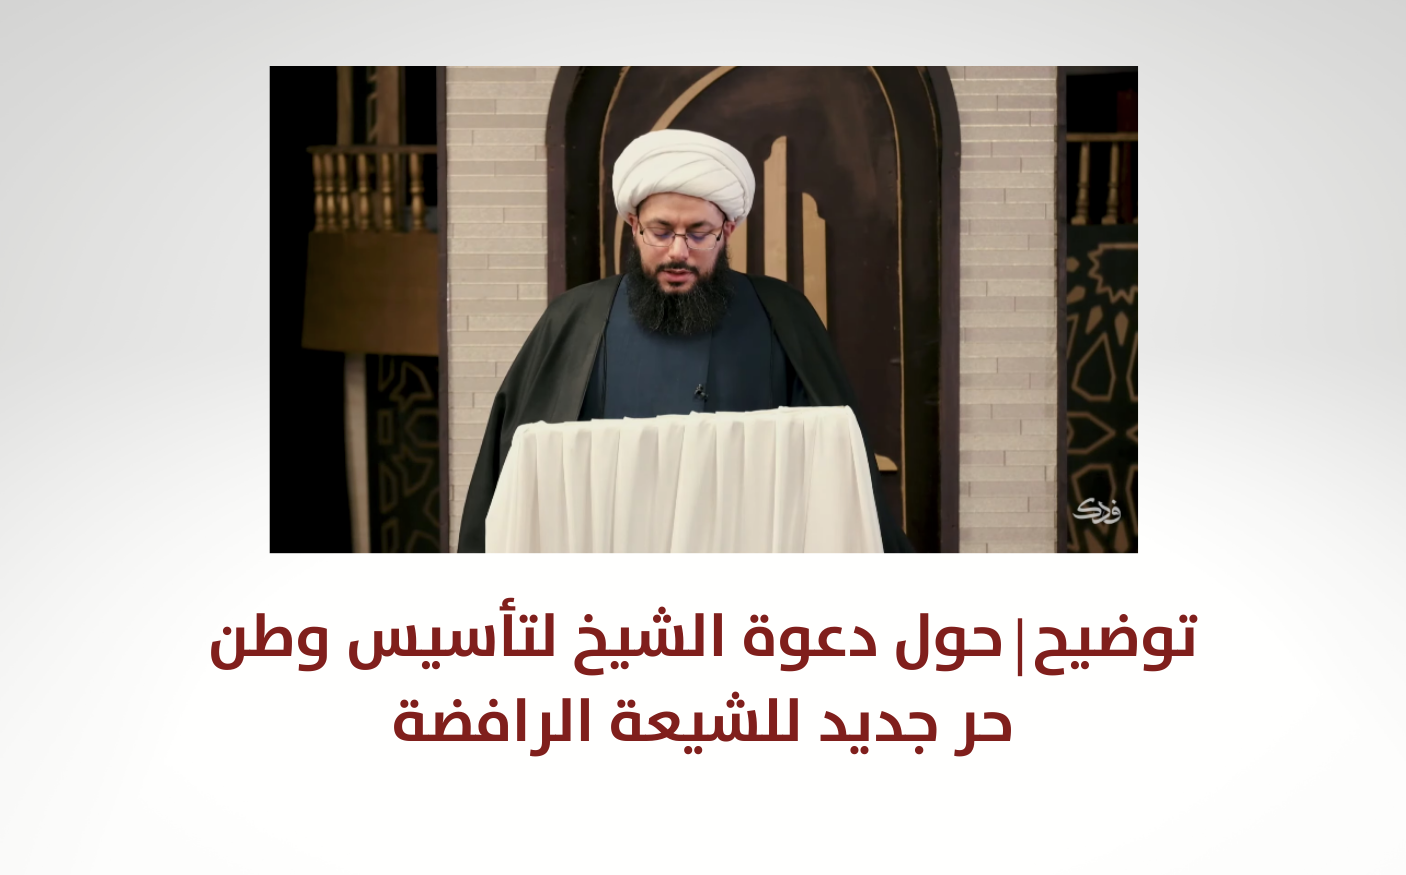 توضيح | حول دعوة الشيخ لتأسيس وطن حر جديد للشيعة الرافضة